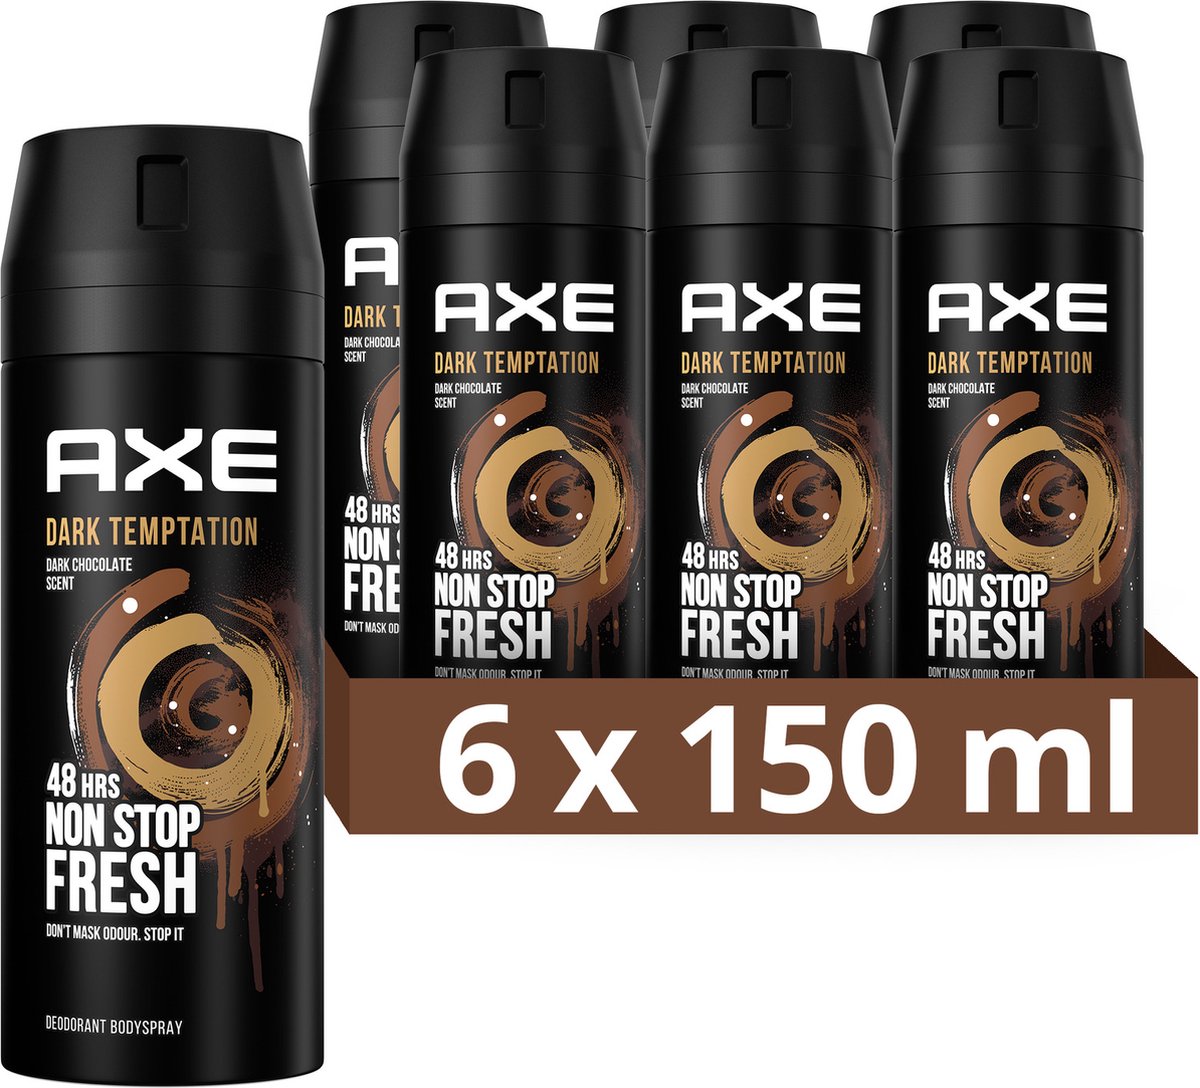 AXE Dark Temptation Deodorant Bodyspray - 6 x 150 ml - Voordeelverpakking - Axe